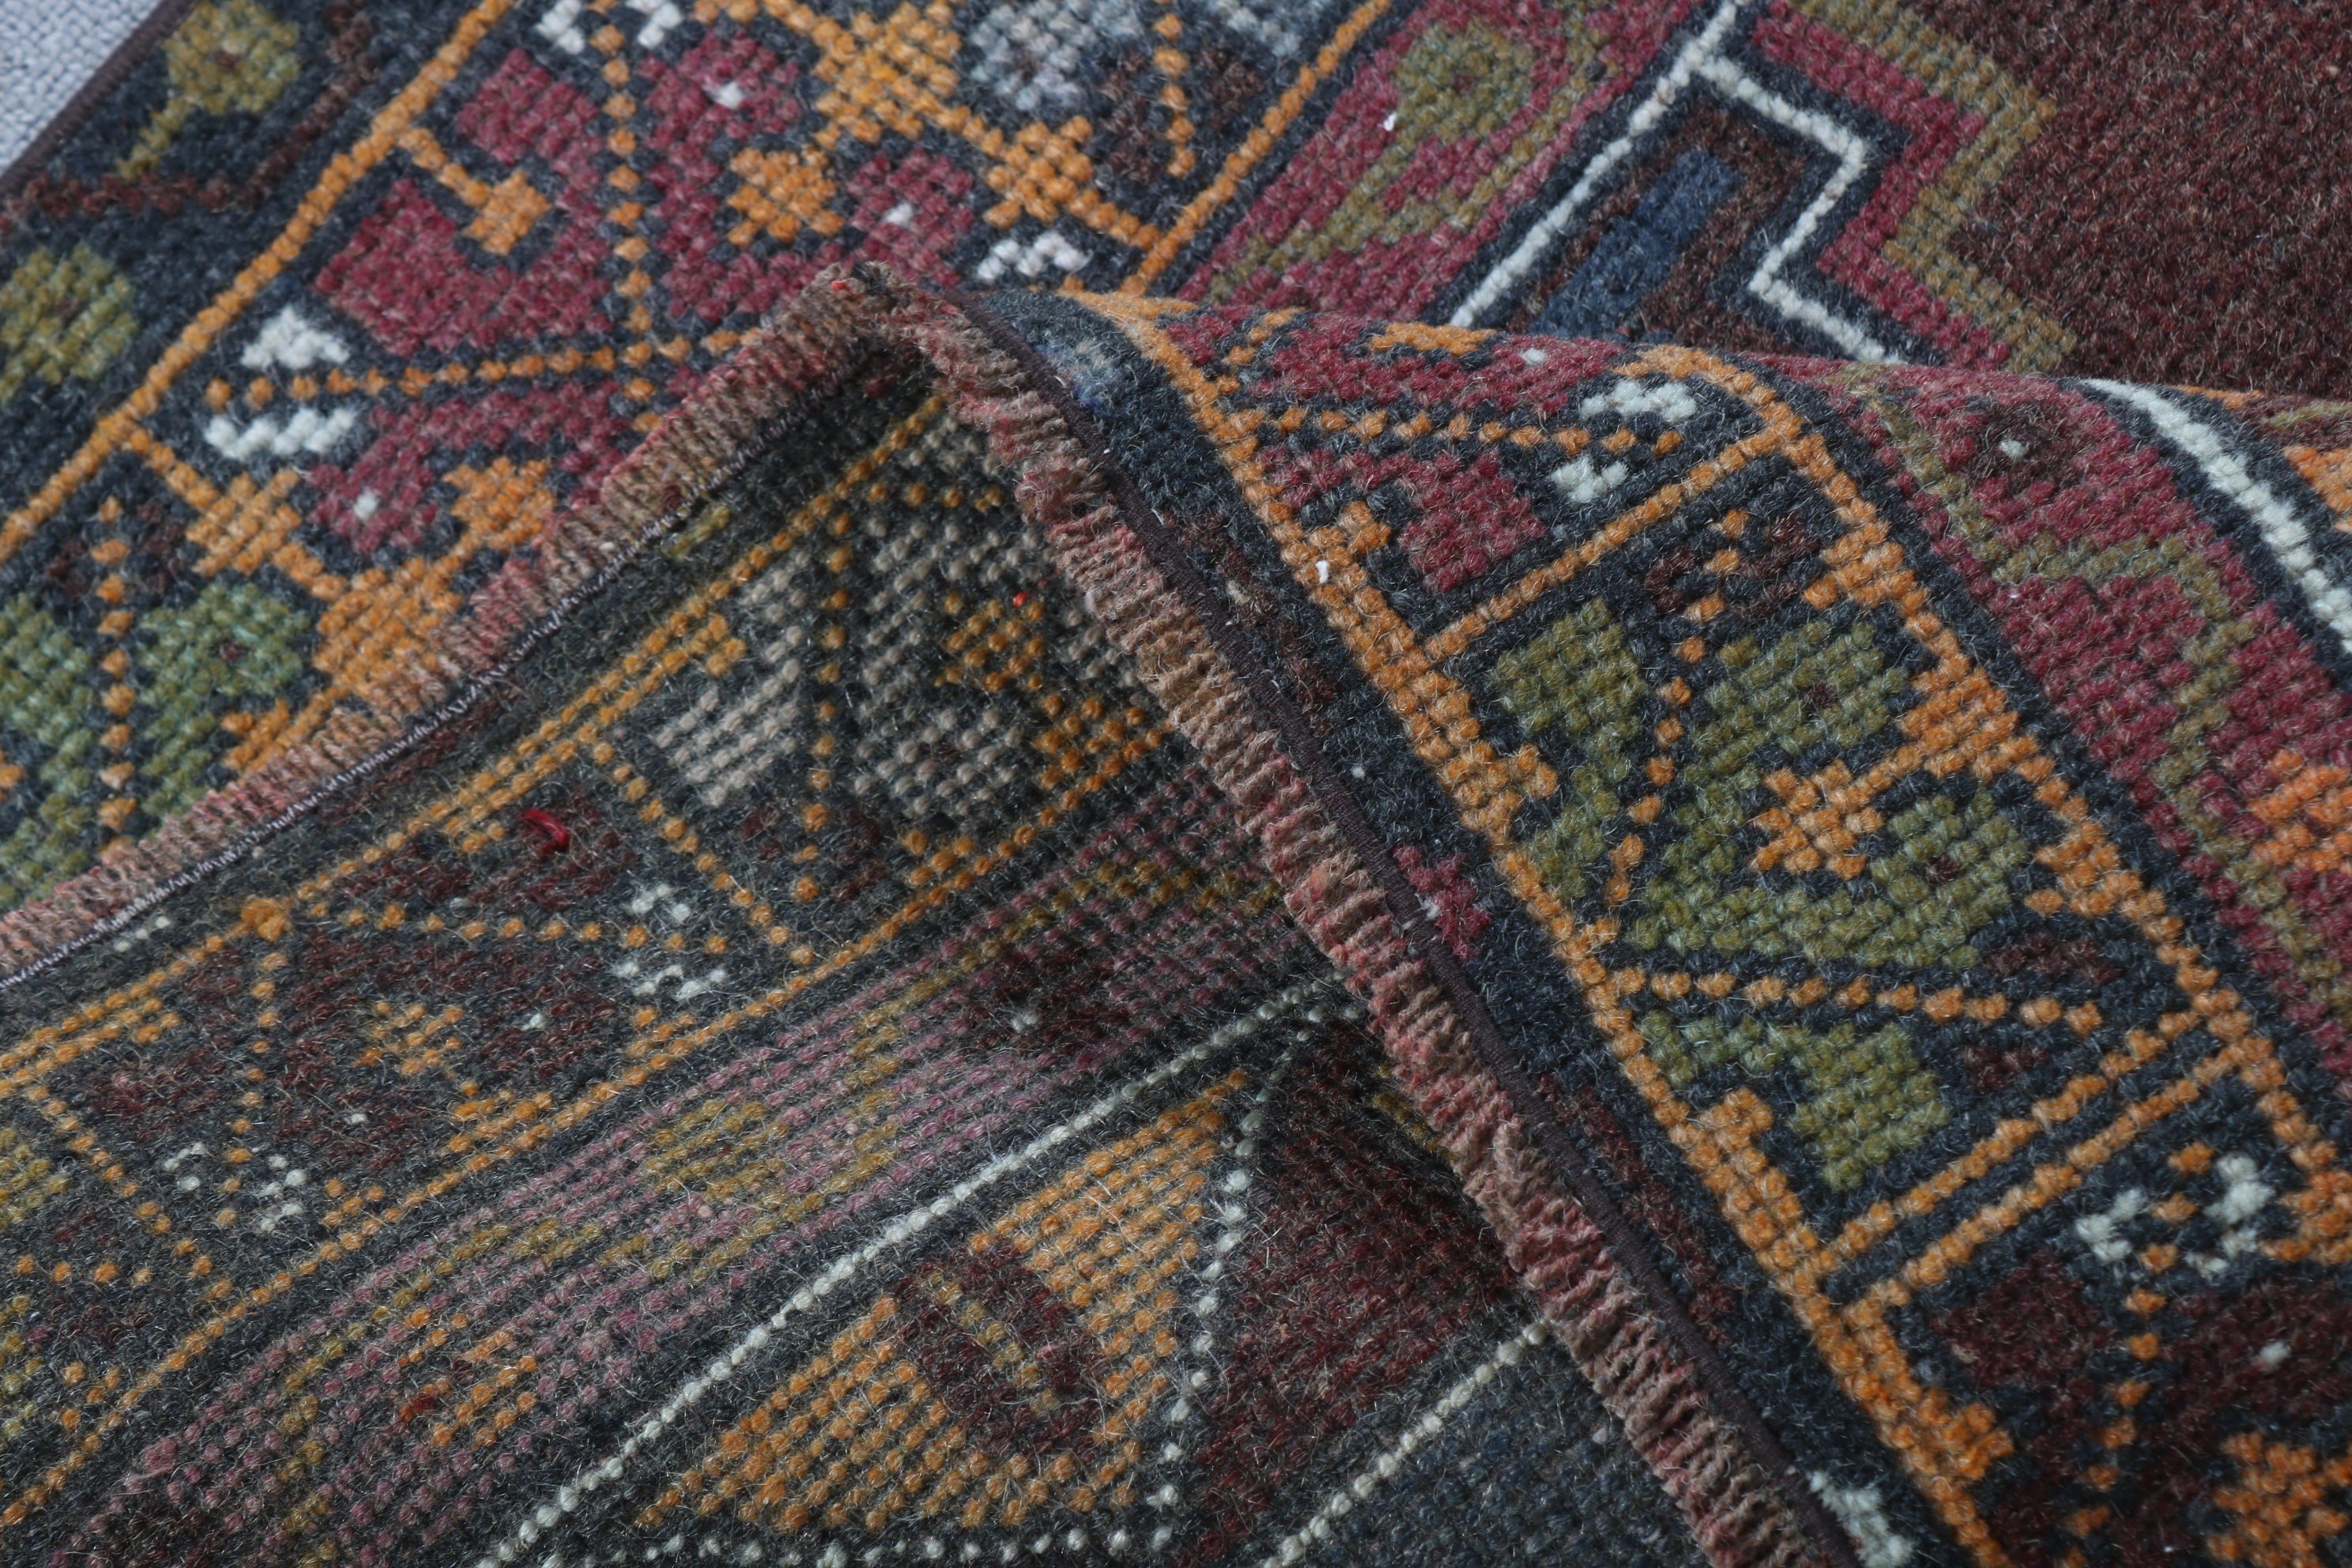 Turkish Rugs, Entryway Rug Rugs, Brown Floor Rug, Rugs for Bedroom, Vintage Rug, Kitchen Rugs, 3x5.1 ft Accent Rug, Entry Rug, Wool Rug